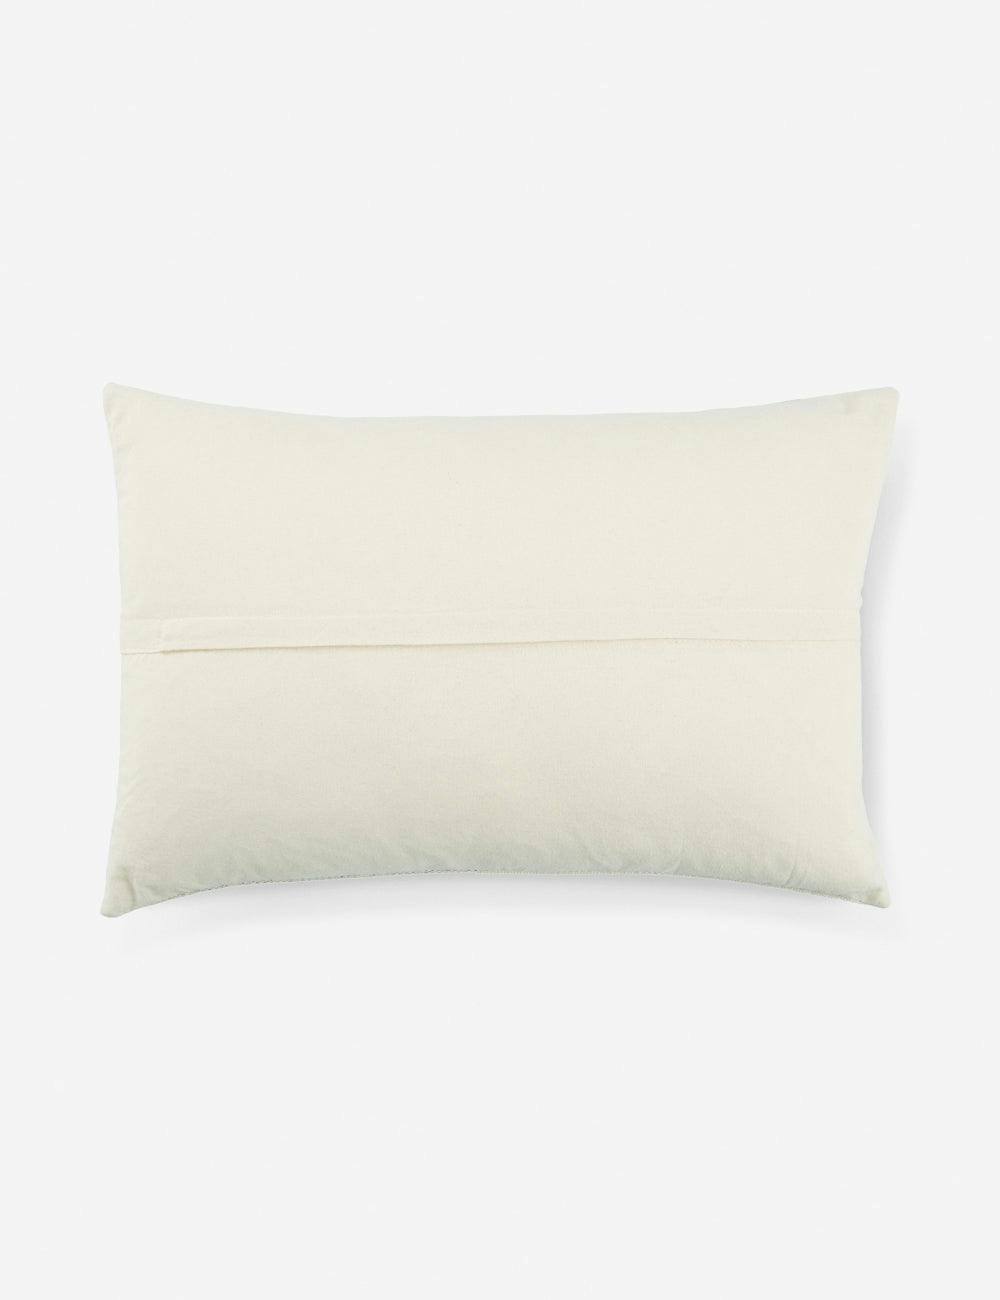 Atoli 16"x24" Gray Tribal Polyester Lumbar Pillow